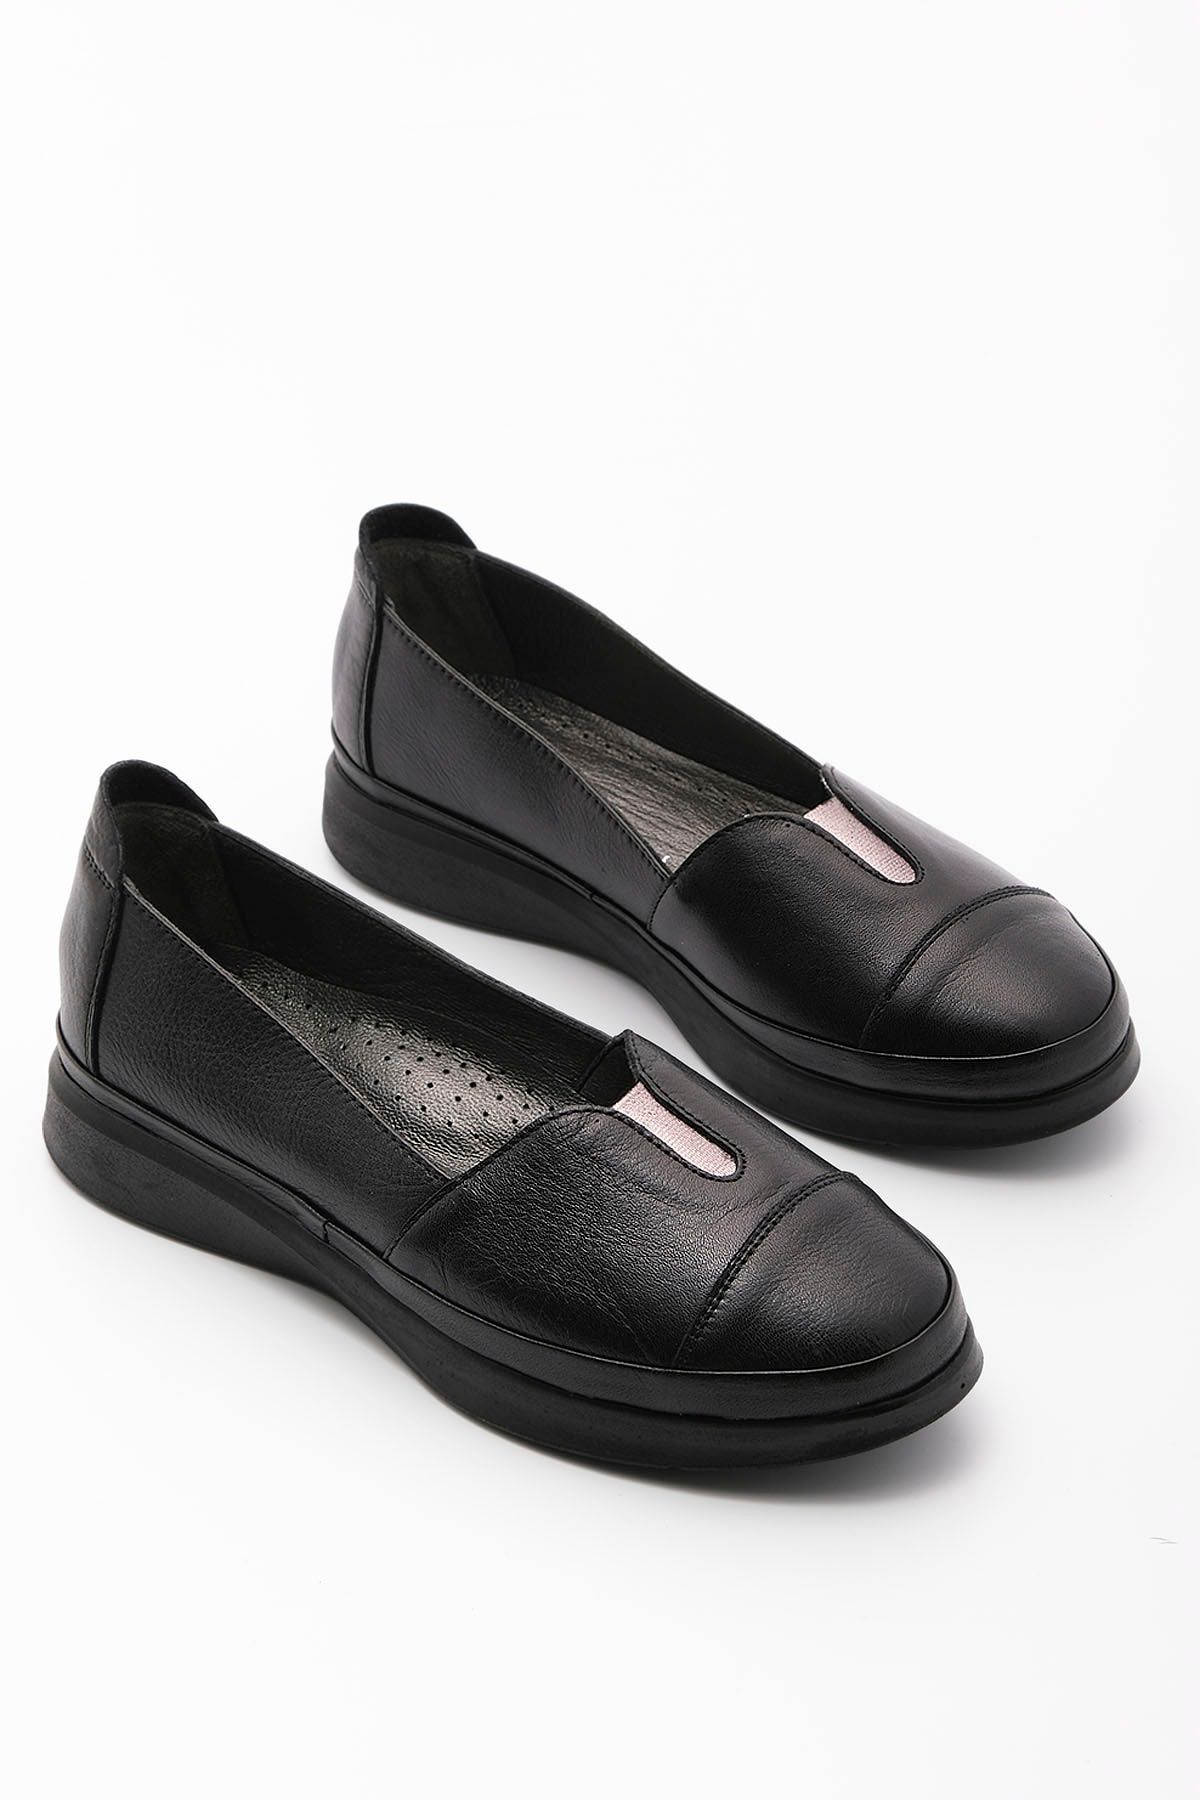 Marjin Kadın Hakiki Deri Comfort Ayakkabı Meyza Siyah